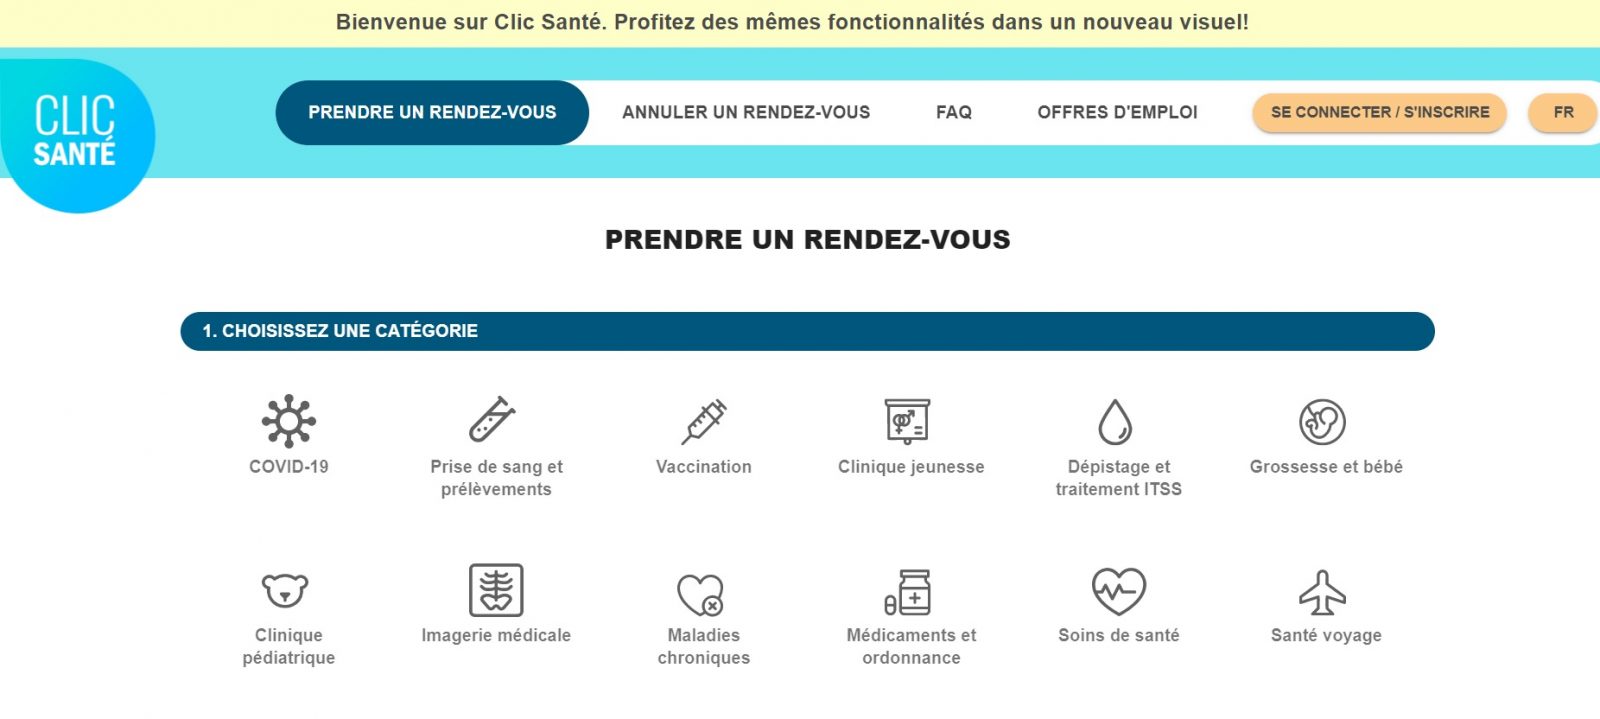 Clic santé : un nouveau portail pour faciliter l’accès aux soins